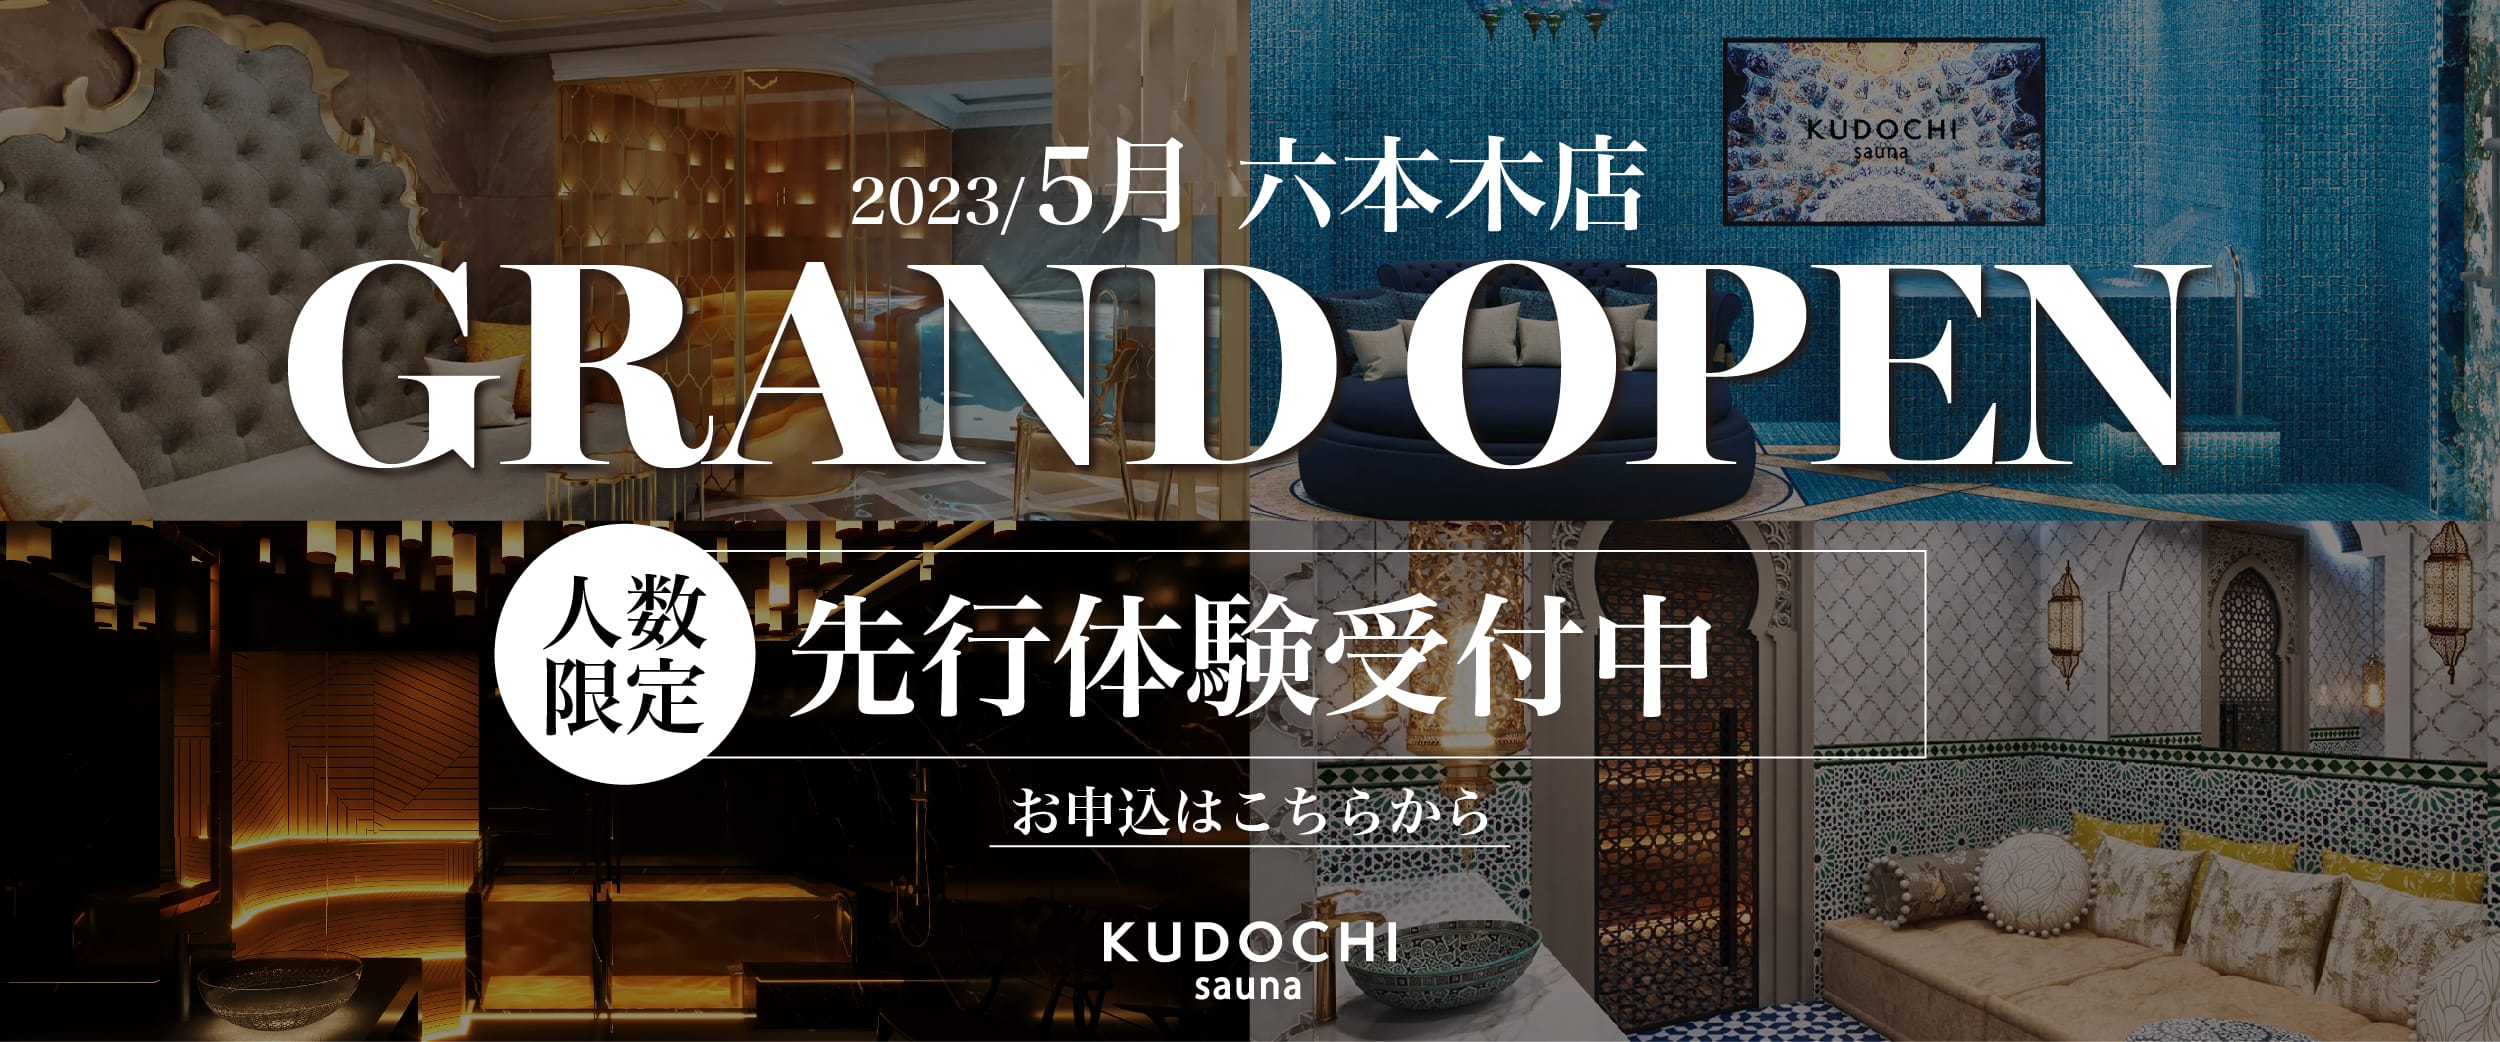 2023/4/26 六本木店 GRAND OPEN 人数限定 先行体験受付中 お申し込みはこちらから KUDOCHI sauna